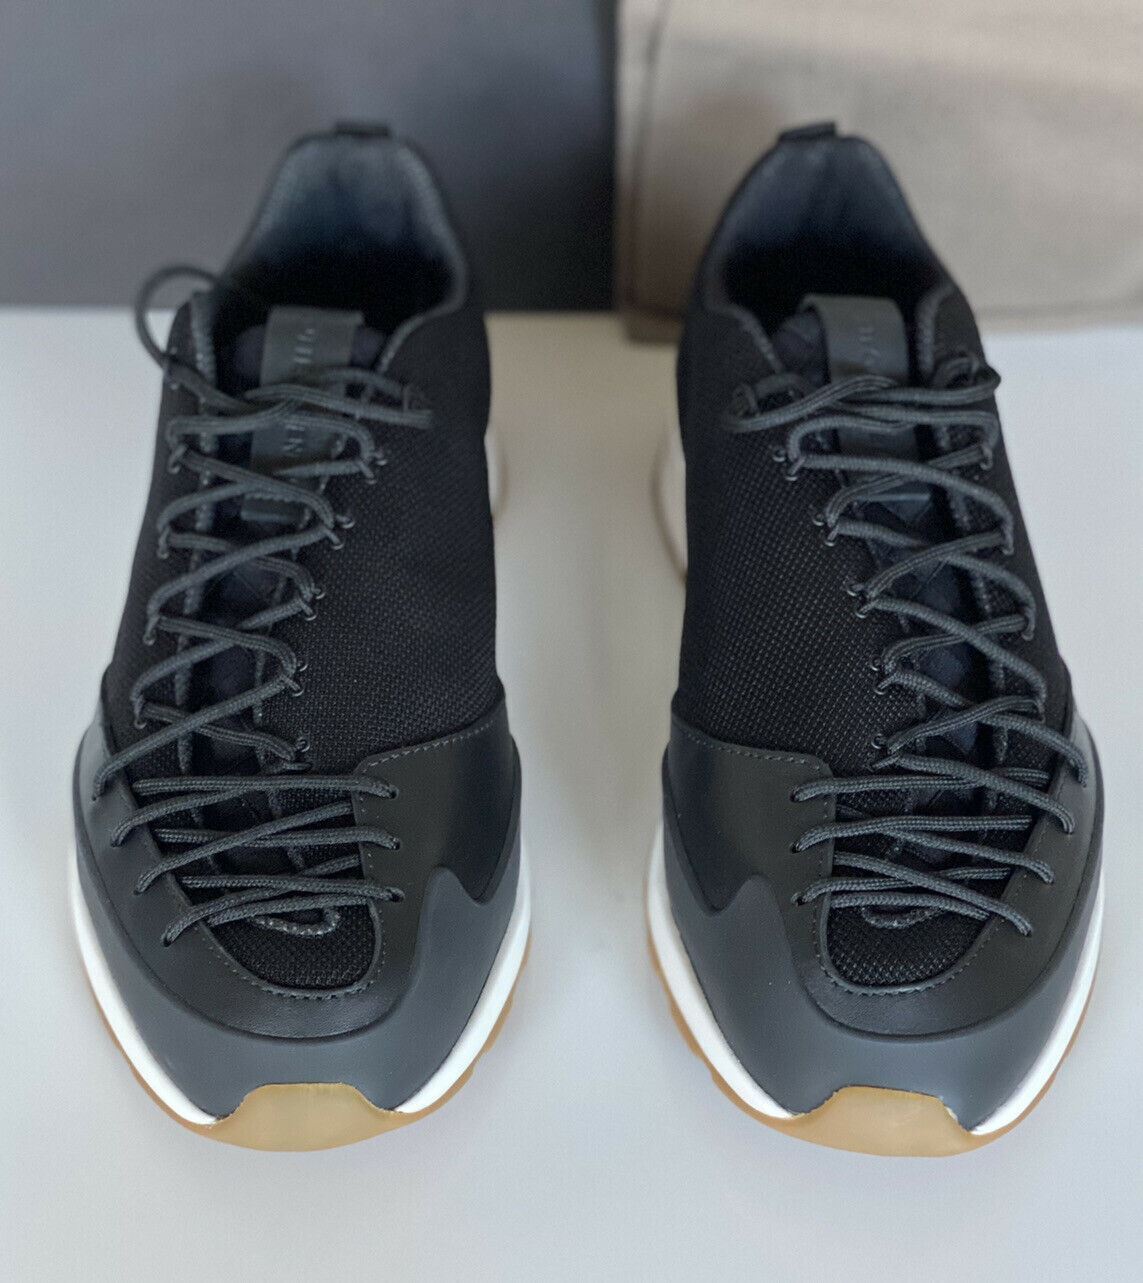 Мужские черные кроссовки Scar Tex Bottega Veneta 790 долларов США 8,5 США (41,5 евро) 609891 